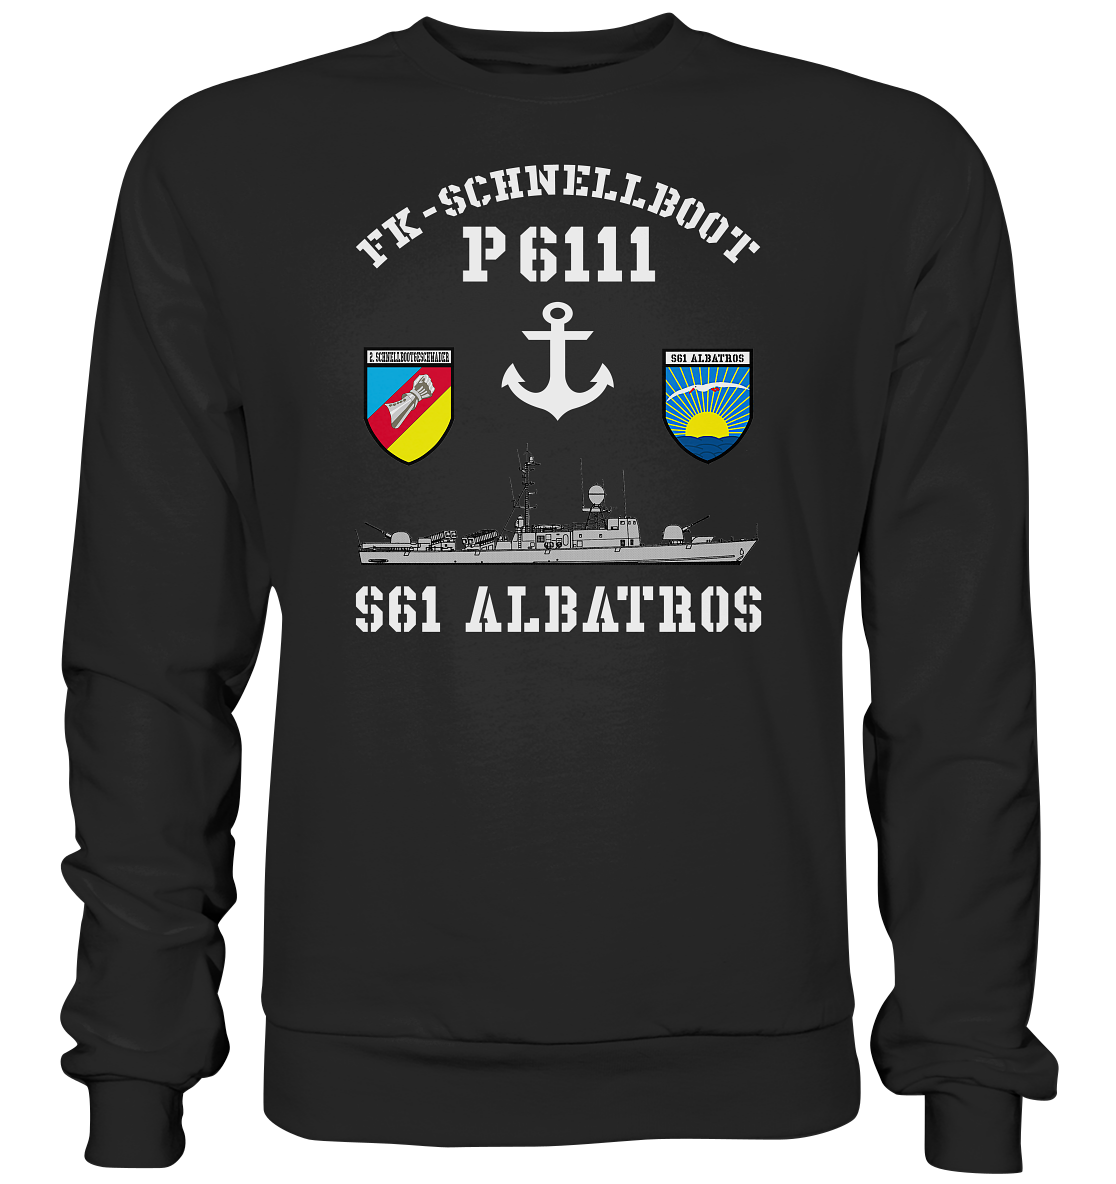 FK-Schnellboot P6111 ALBATROS 2.SG Anker - Premium Sweatshirt